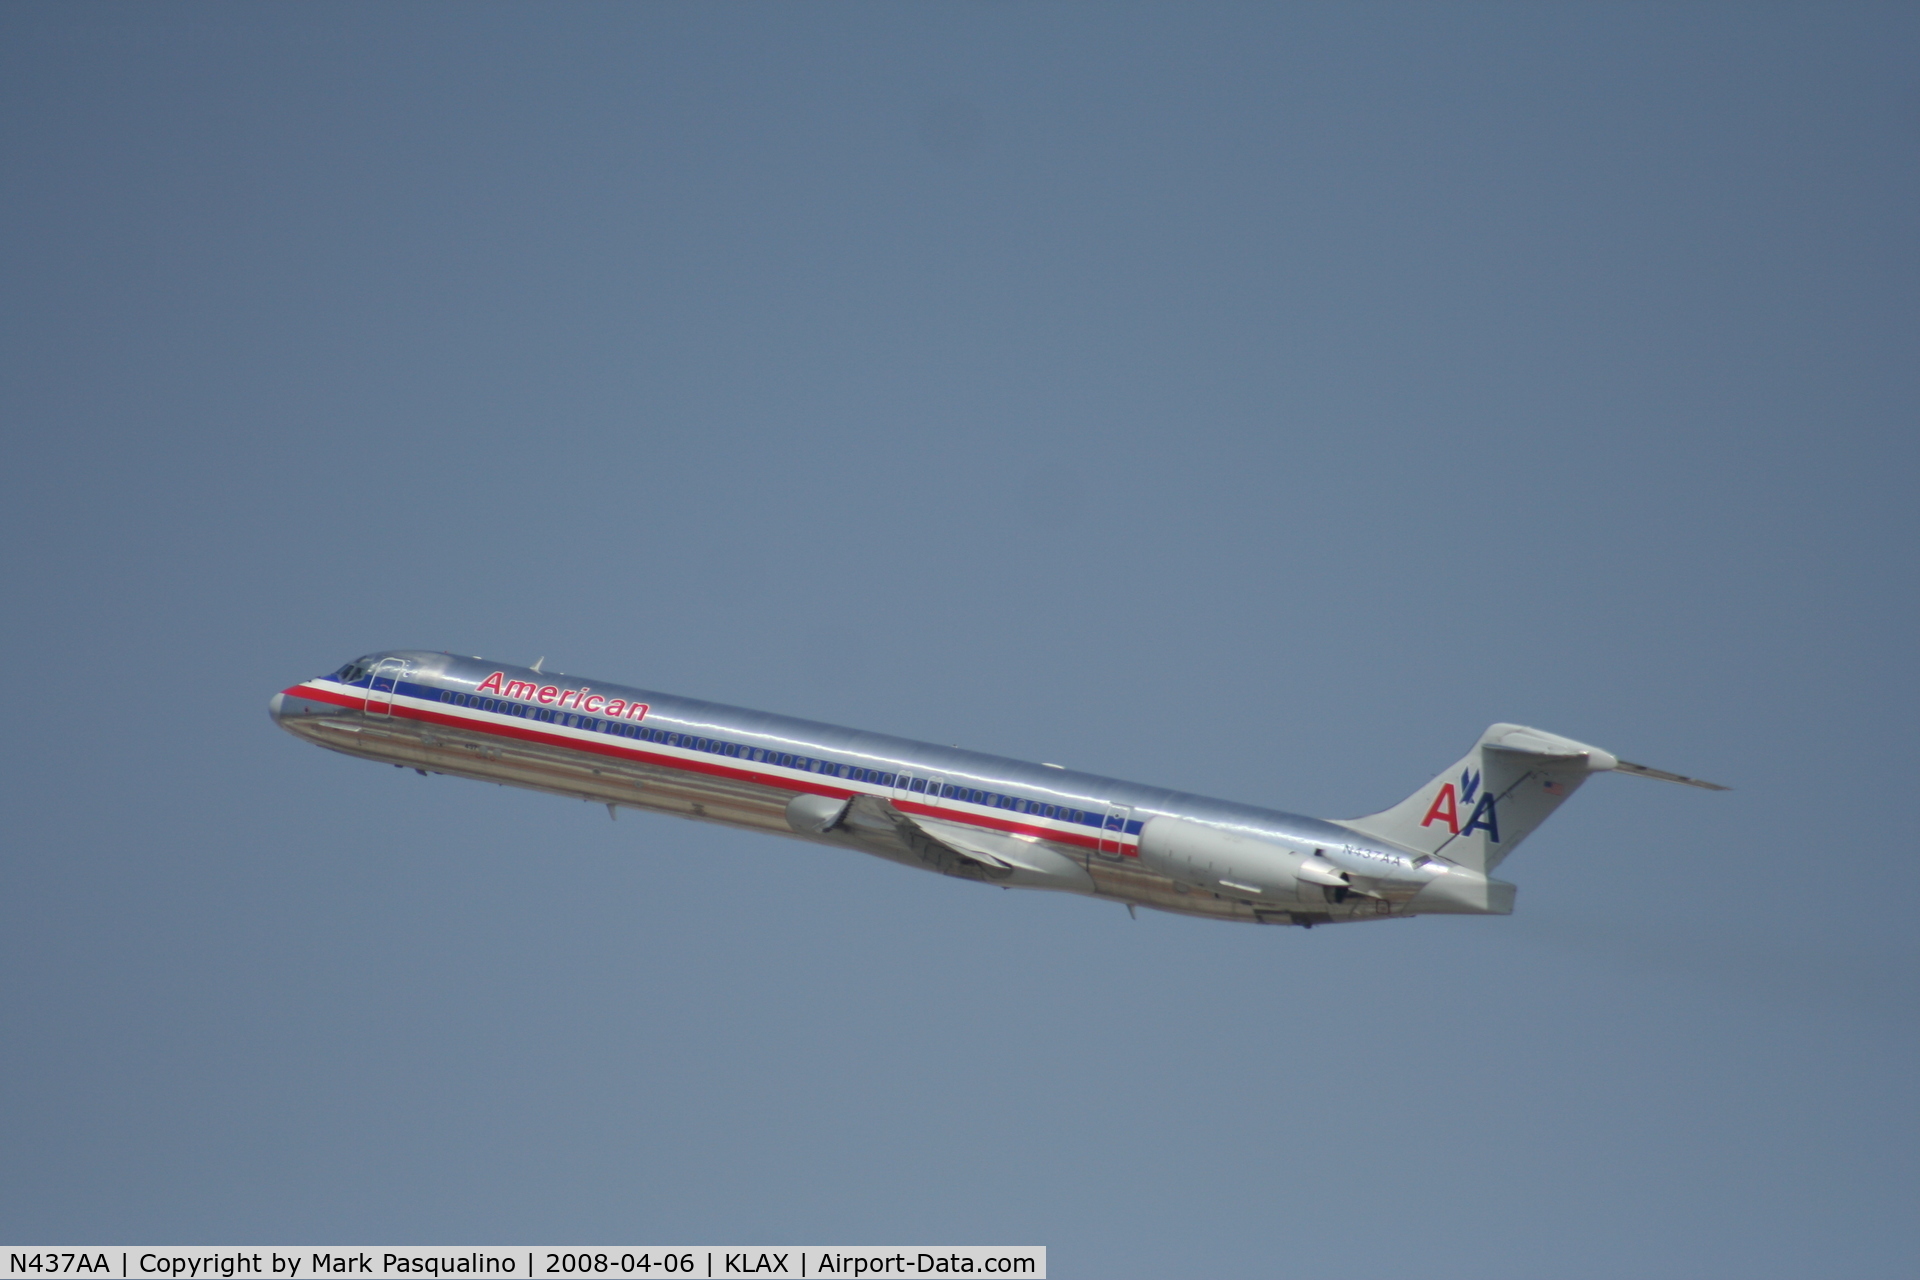 N437AA, 1987 McDonnell Douglas MD-83 (DC-9-83) C/N 49455, MD-83